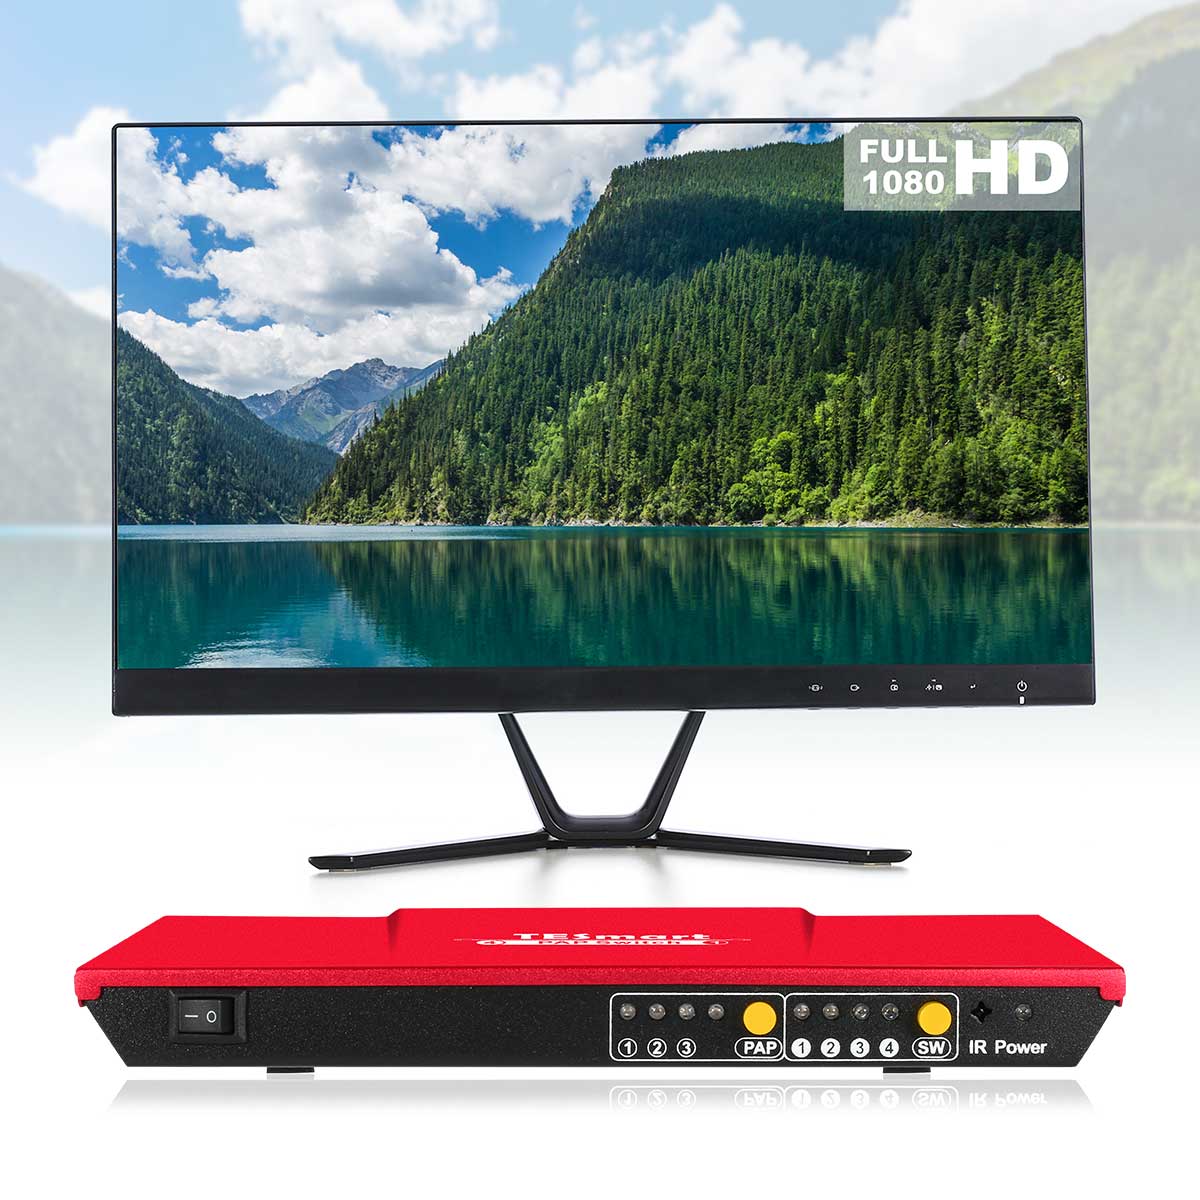 TESmart HDMI Switch 4 Port HDMI Switch 1080P@60Hz Multi Viewer und nahtloses Umschalten 4 in 1 Out Seamless HDMI Switch，Multi-View1080p@60Hz，IR-Fernbedienung